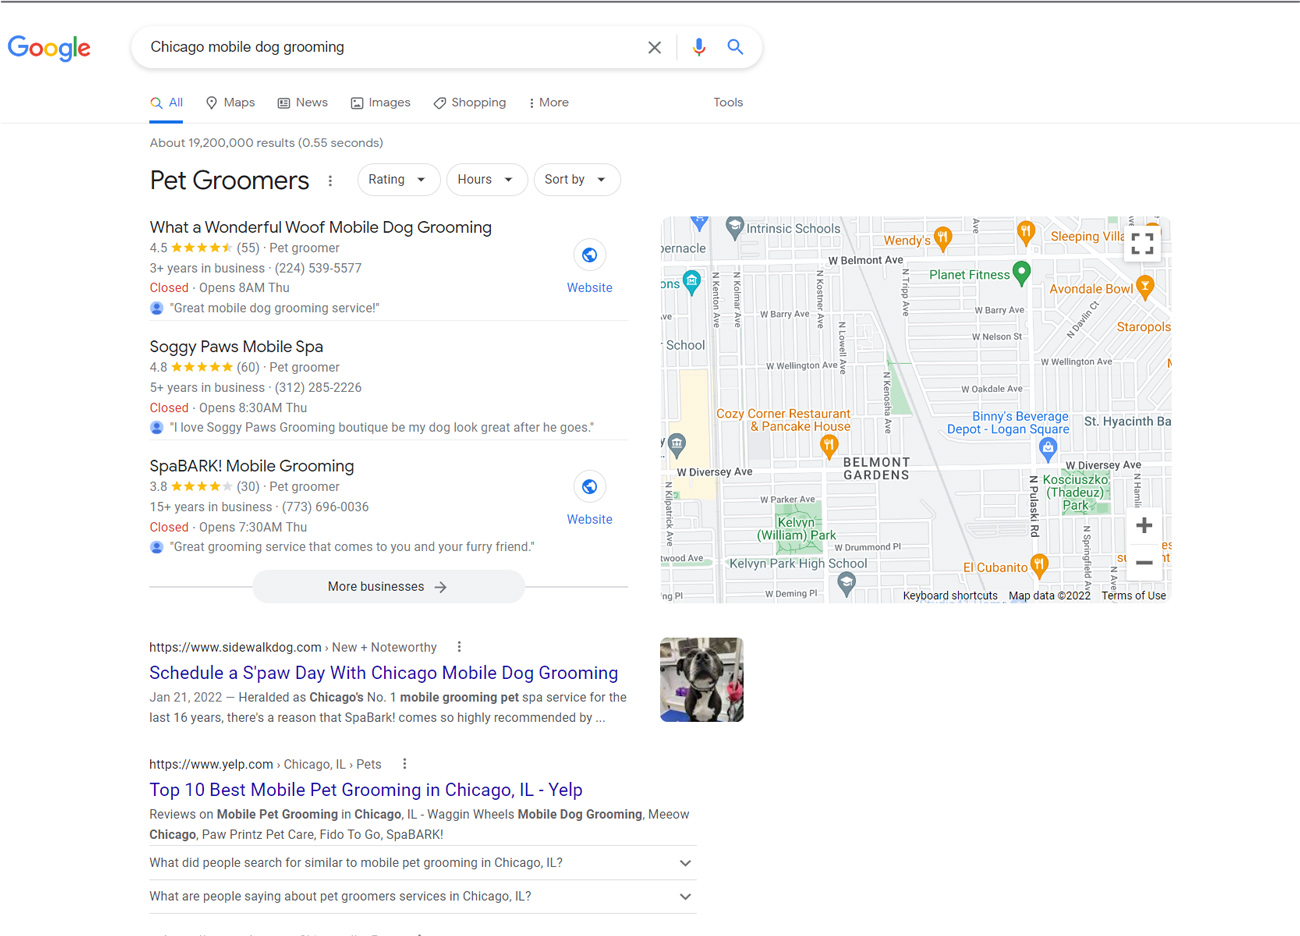 谷歌搜索结果显示芝加哥移动狗美容。